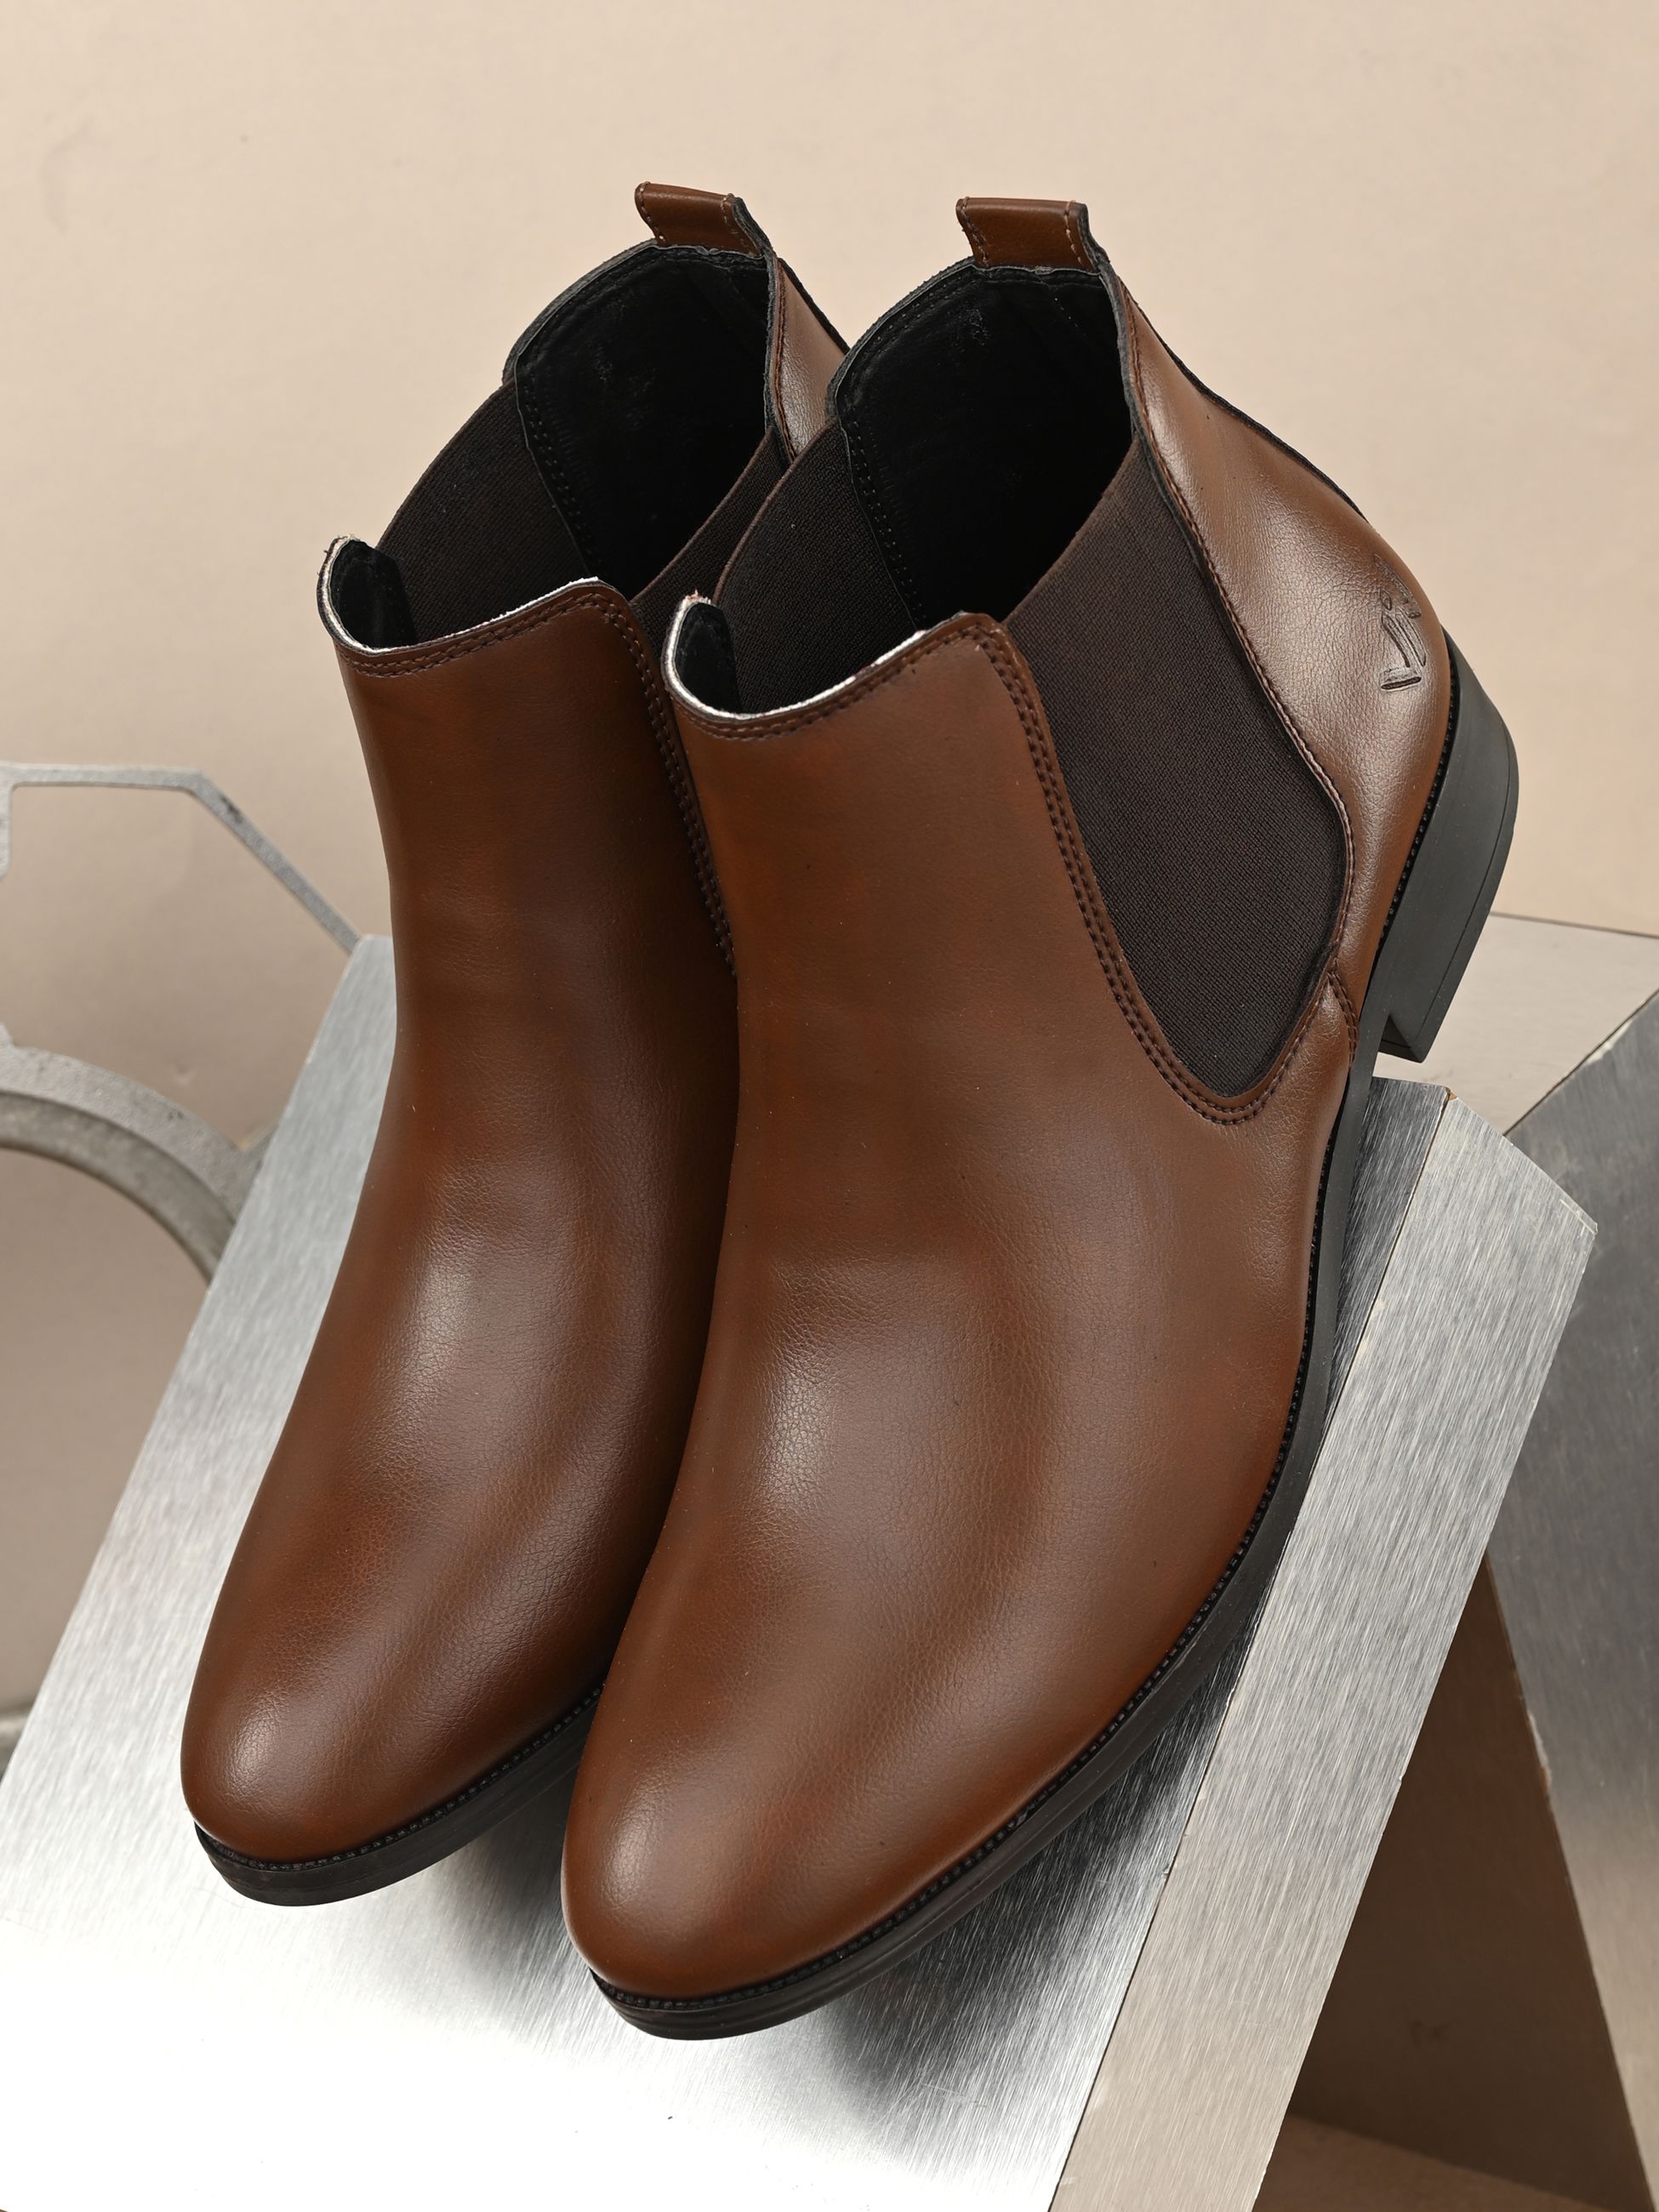     			viv - Brown Men's Chelsea Boots